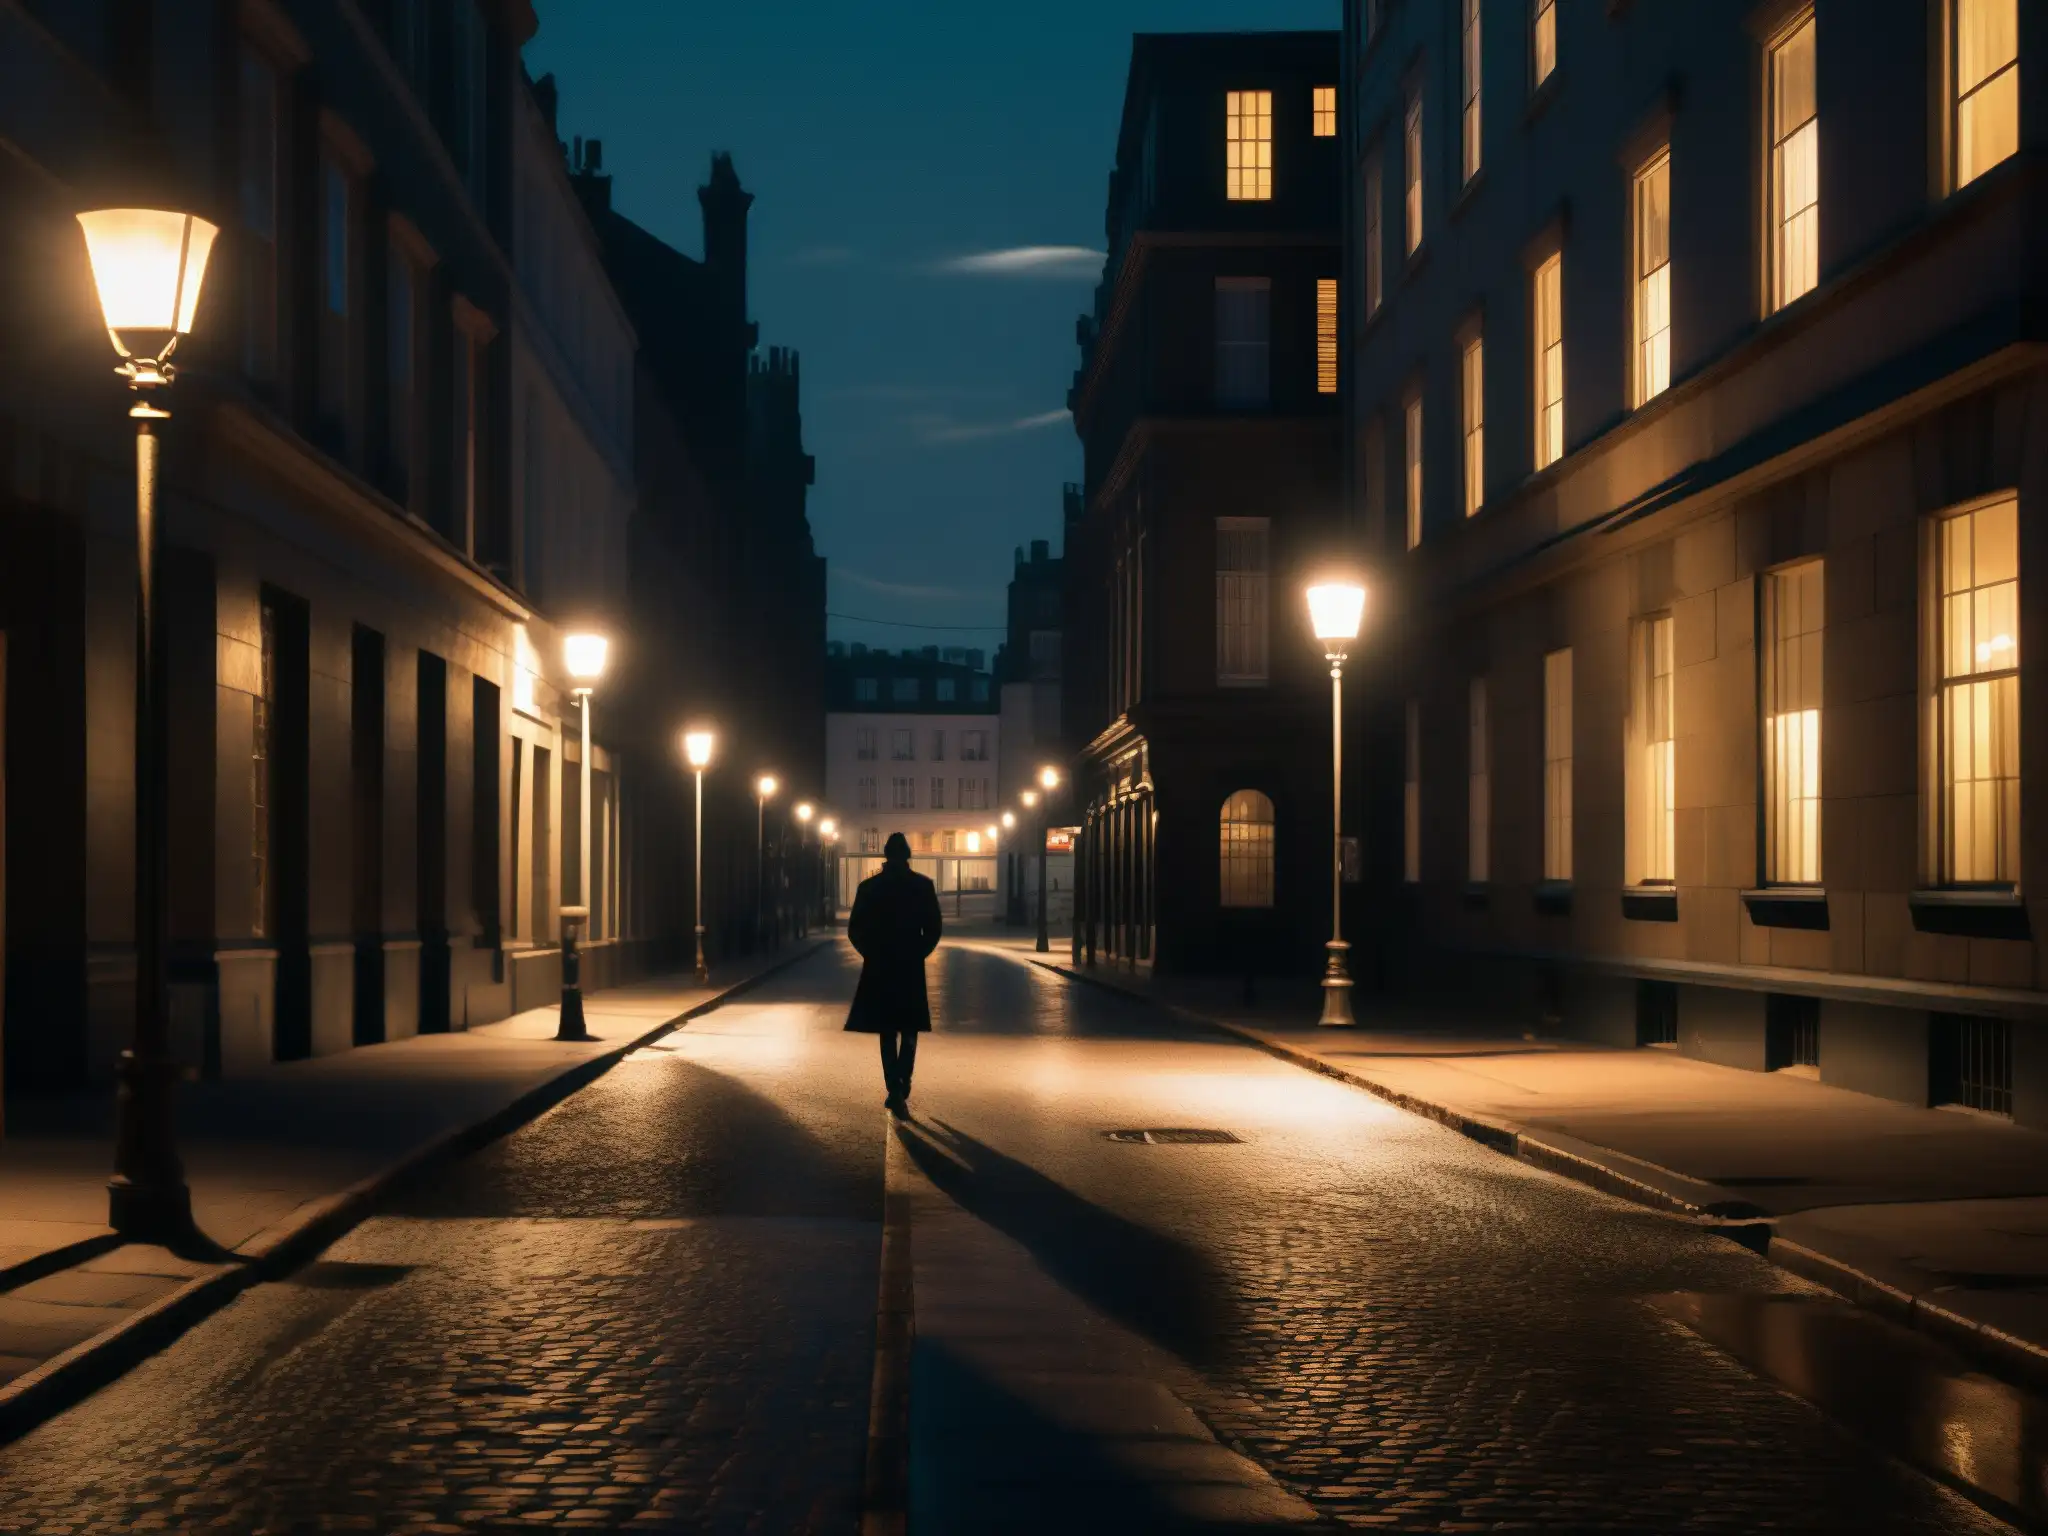 Escena nocturna en la ciudad con figura solitaria bajo farola temblorosa, proyectando sombras largas